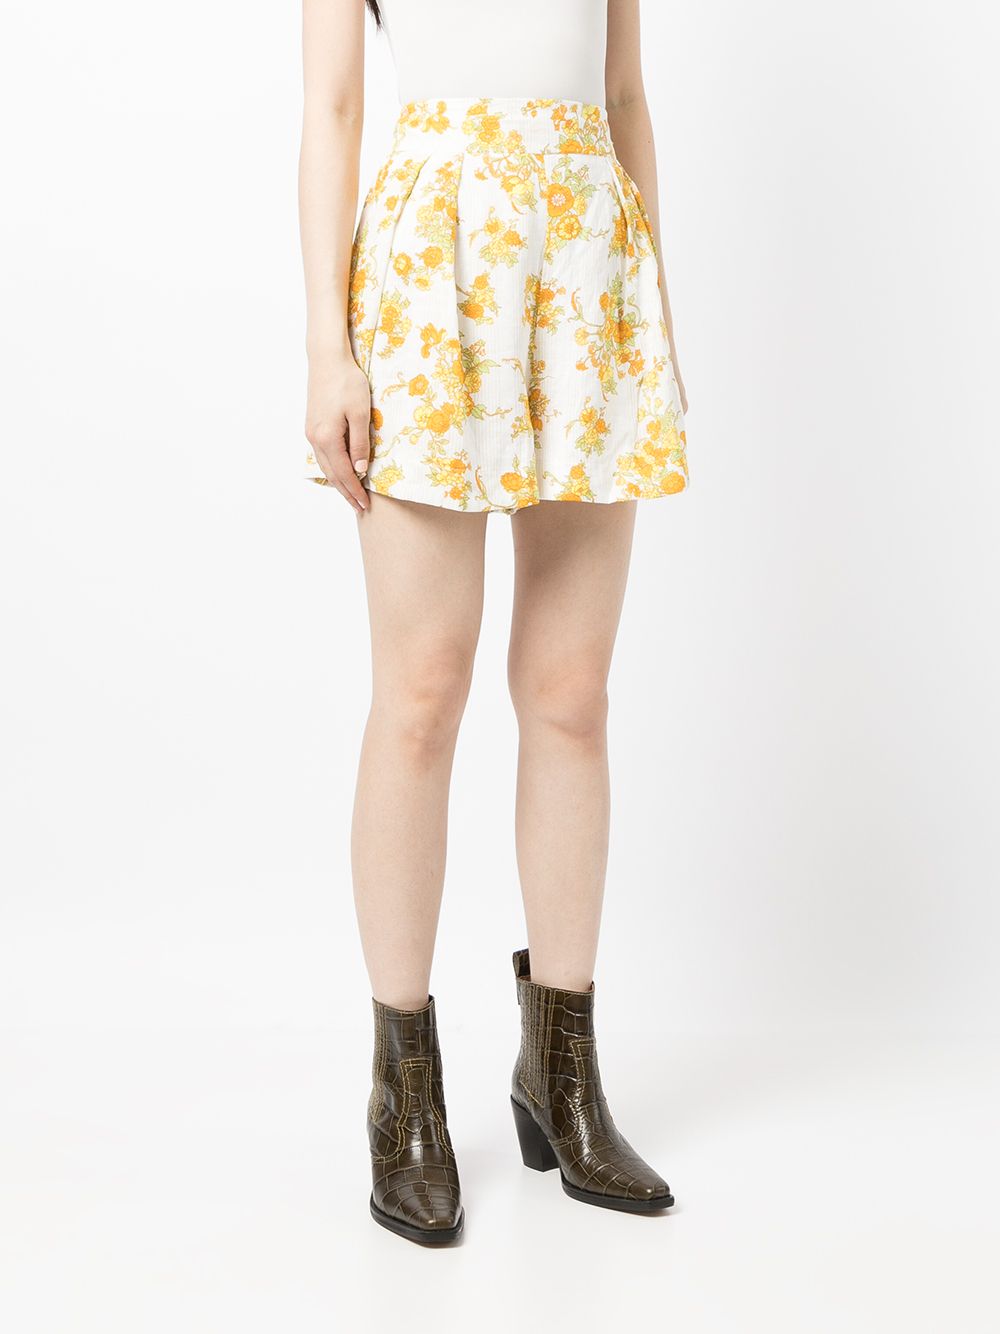 фото Faithfull the brand шорты ondine с цветочным принтом